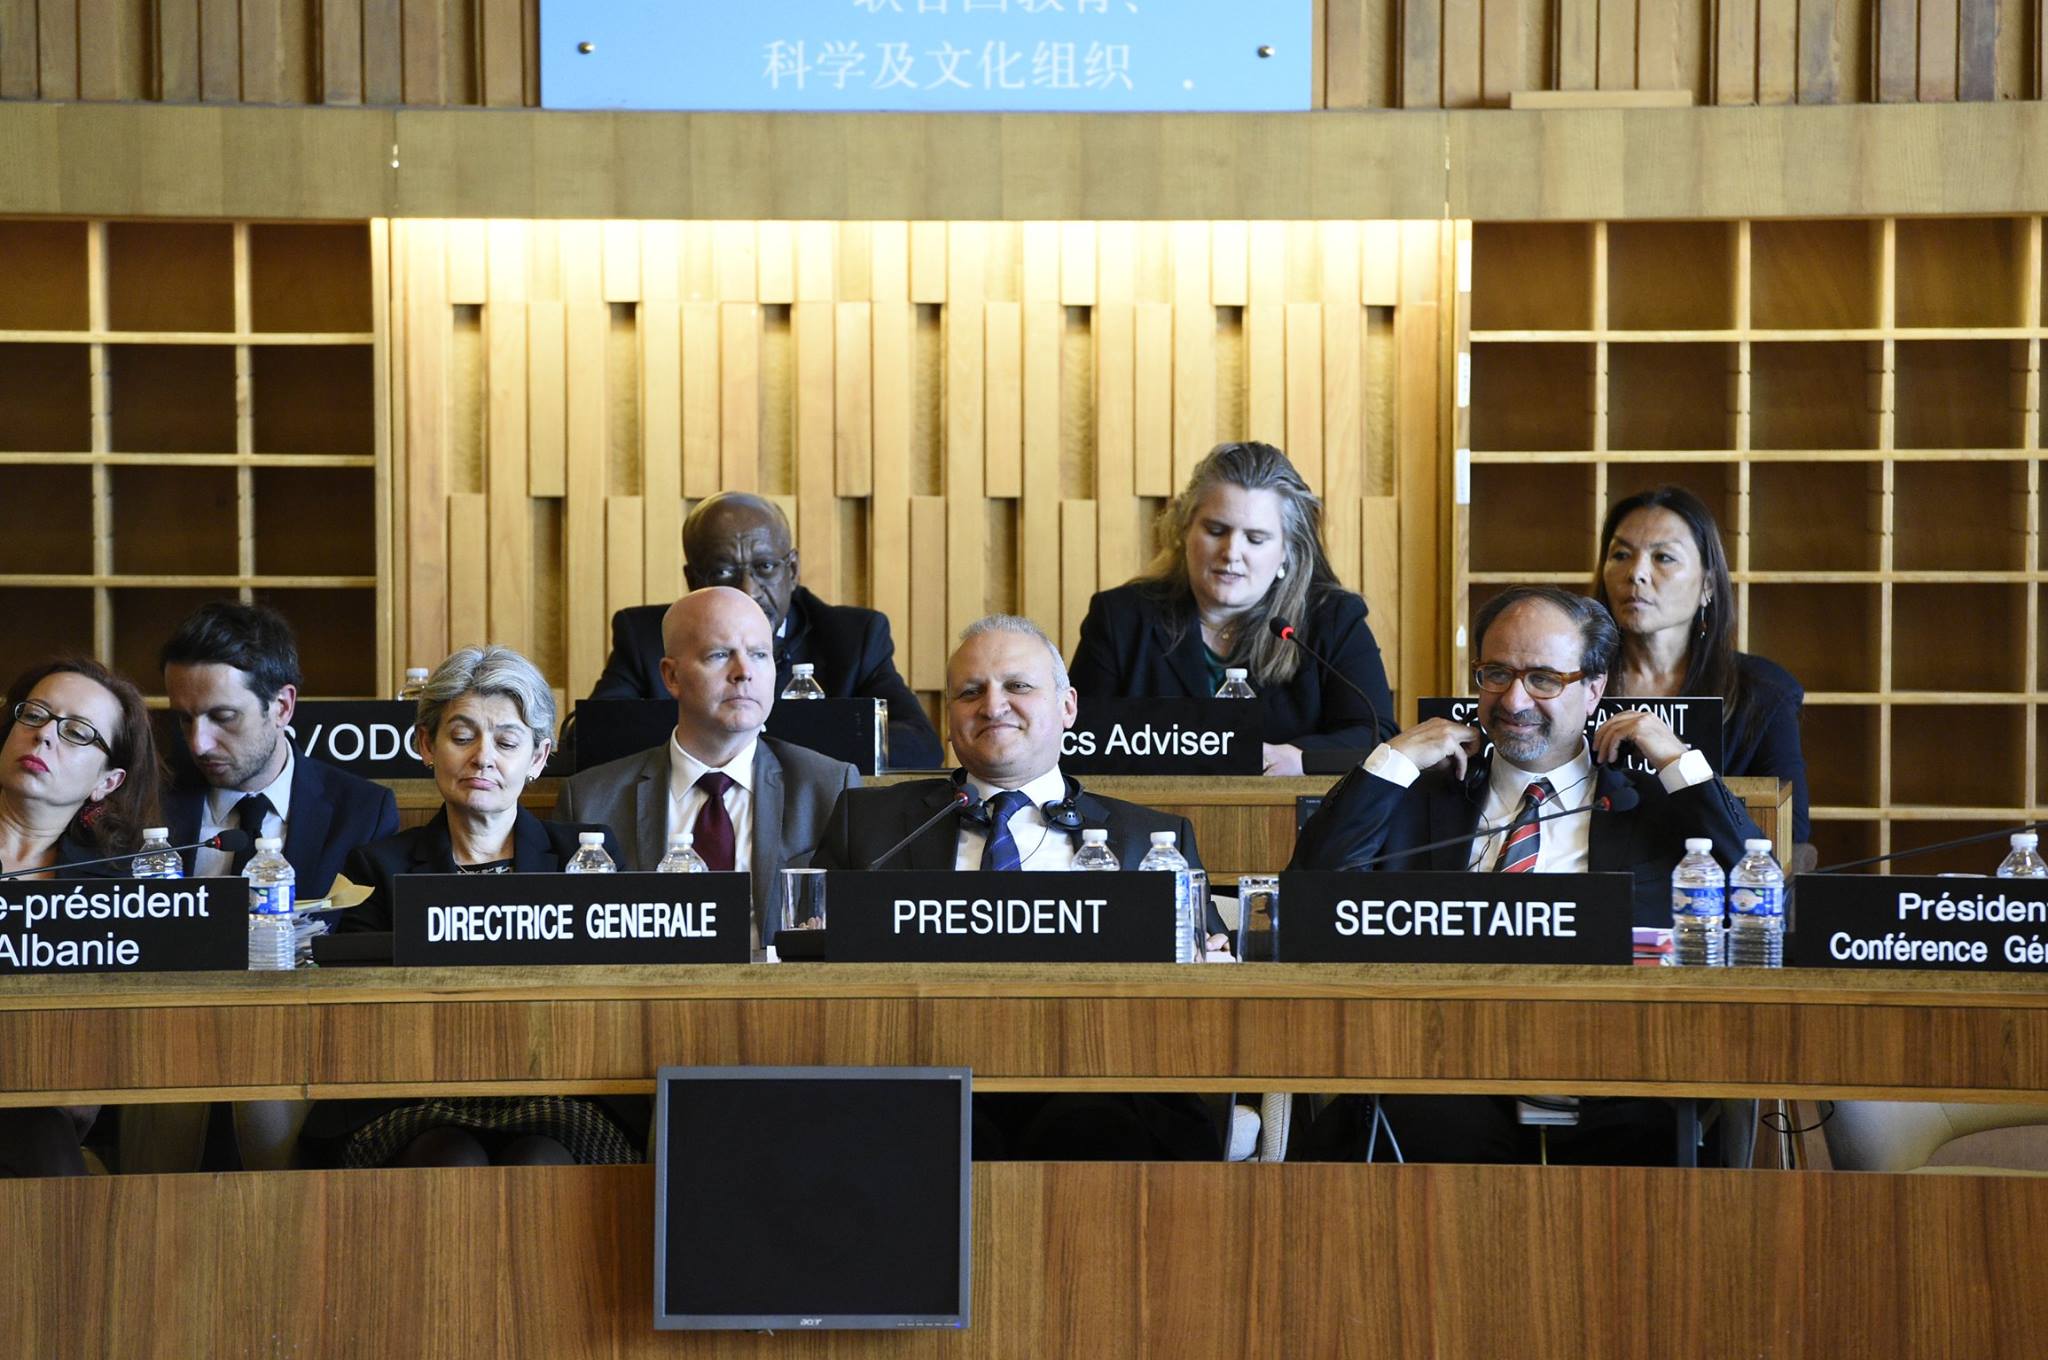 UNESCO Executive Board Meeting 12 